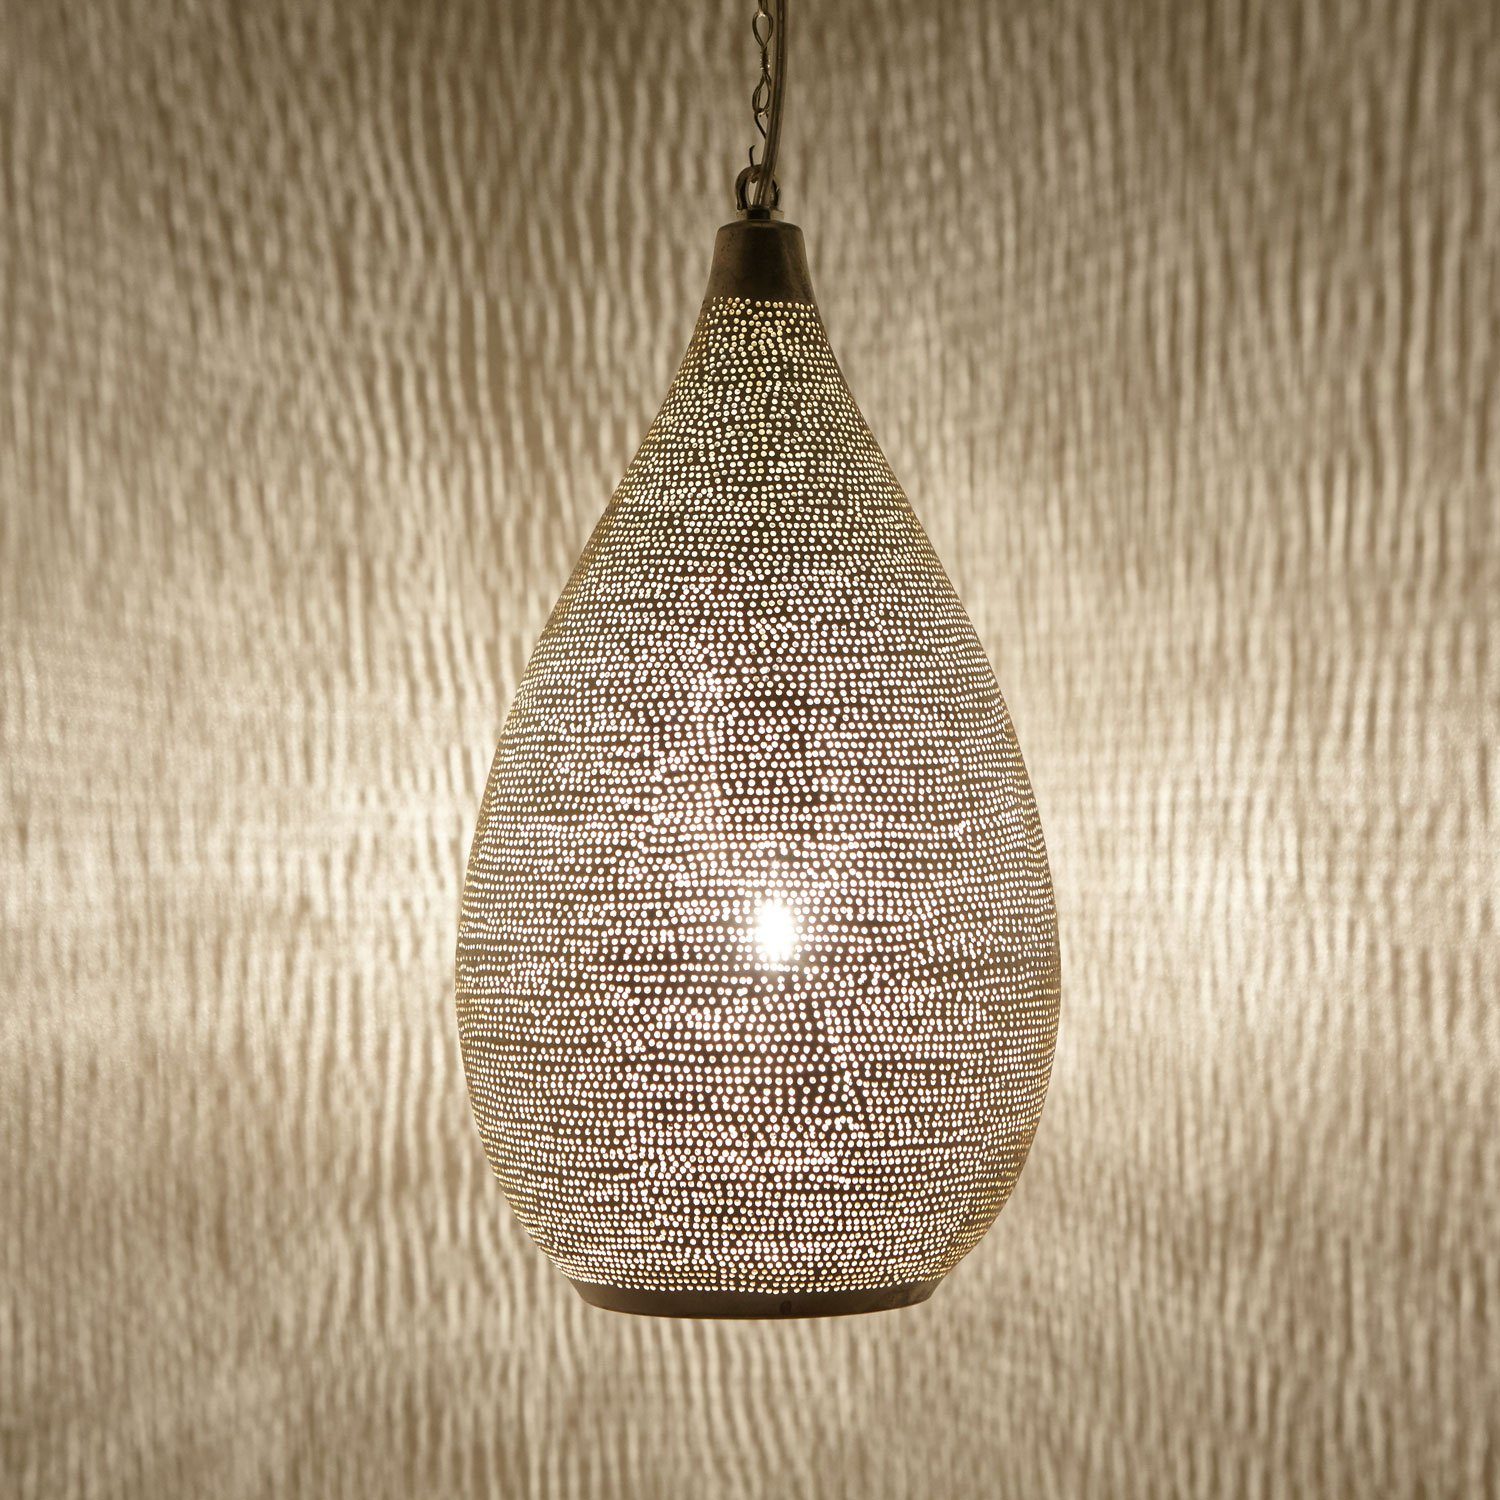 Silberlampe Casa Hängelampe Marokkanische Pendelleuchte Sada aus Moro Deckenleuchten D20 Naouma EL2185 Silber Lampe Handgefertigte Leuchtmittel, ohne Prachtvolle Messing,